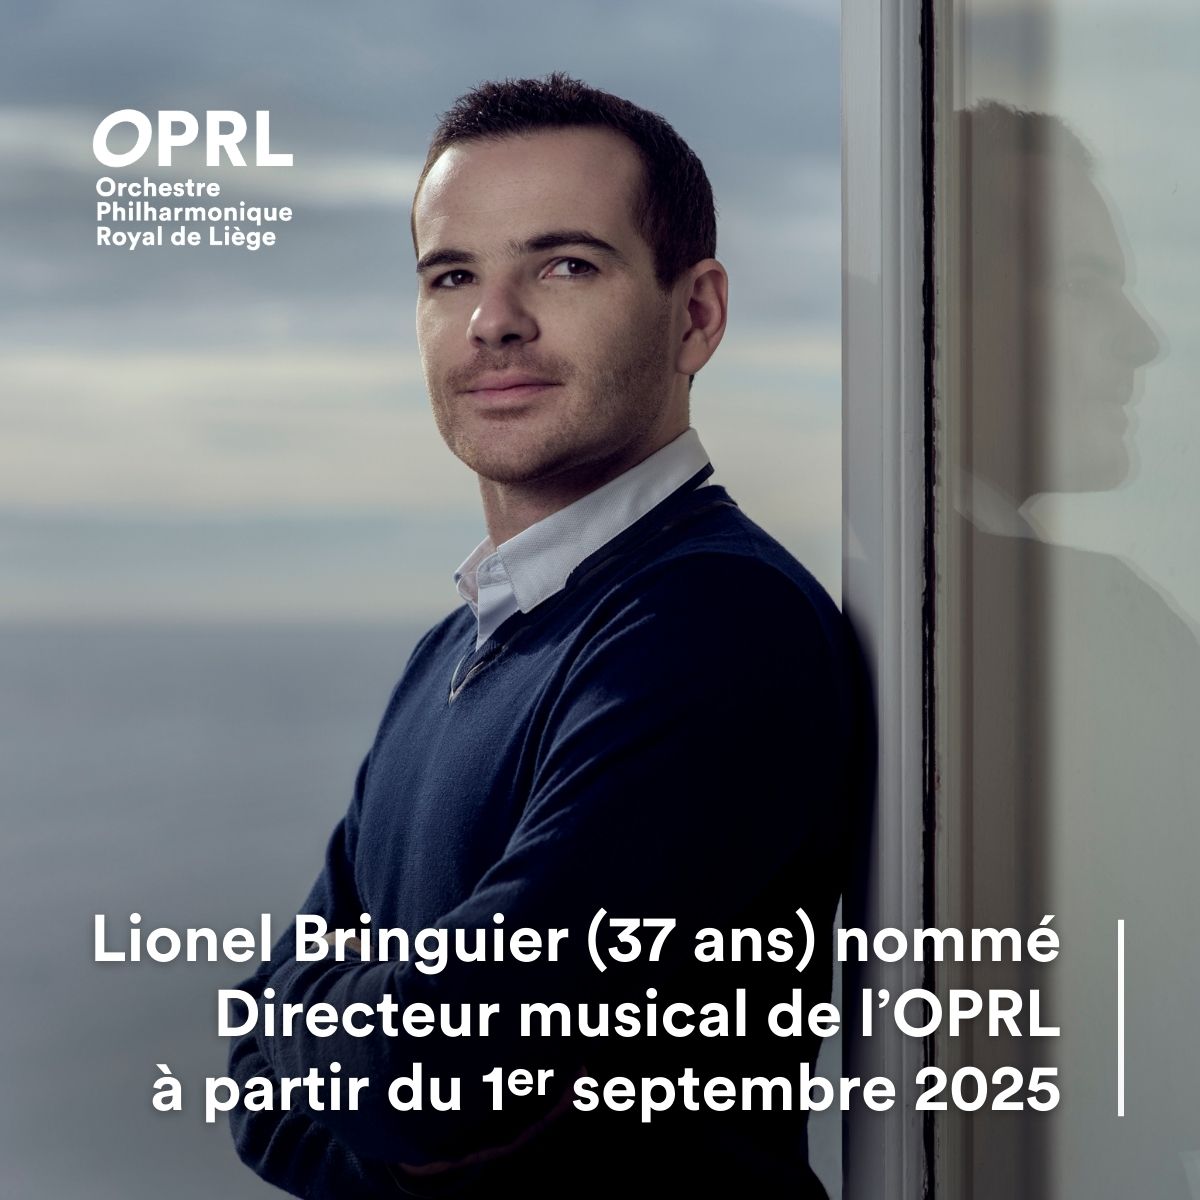 Le chef d'orchestre @LionelBringuier (37 ans), nommé Directeur musical de l'OPRL. Il prendra ses fonctions à partir du 1er septembre 2025. Il a été nommé pour une période de quatre ans afin de succéder à @gergelymadaras à l'issue de la saison 24-25 : bit.ly/3vMrrpP